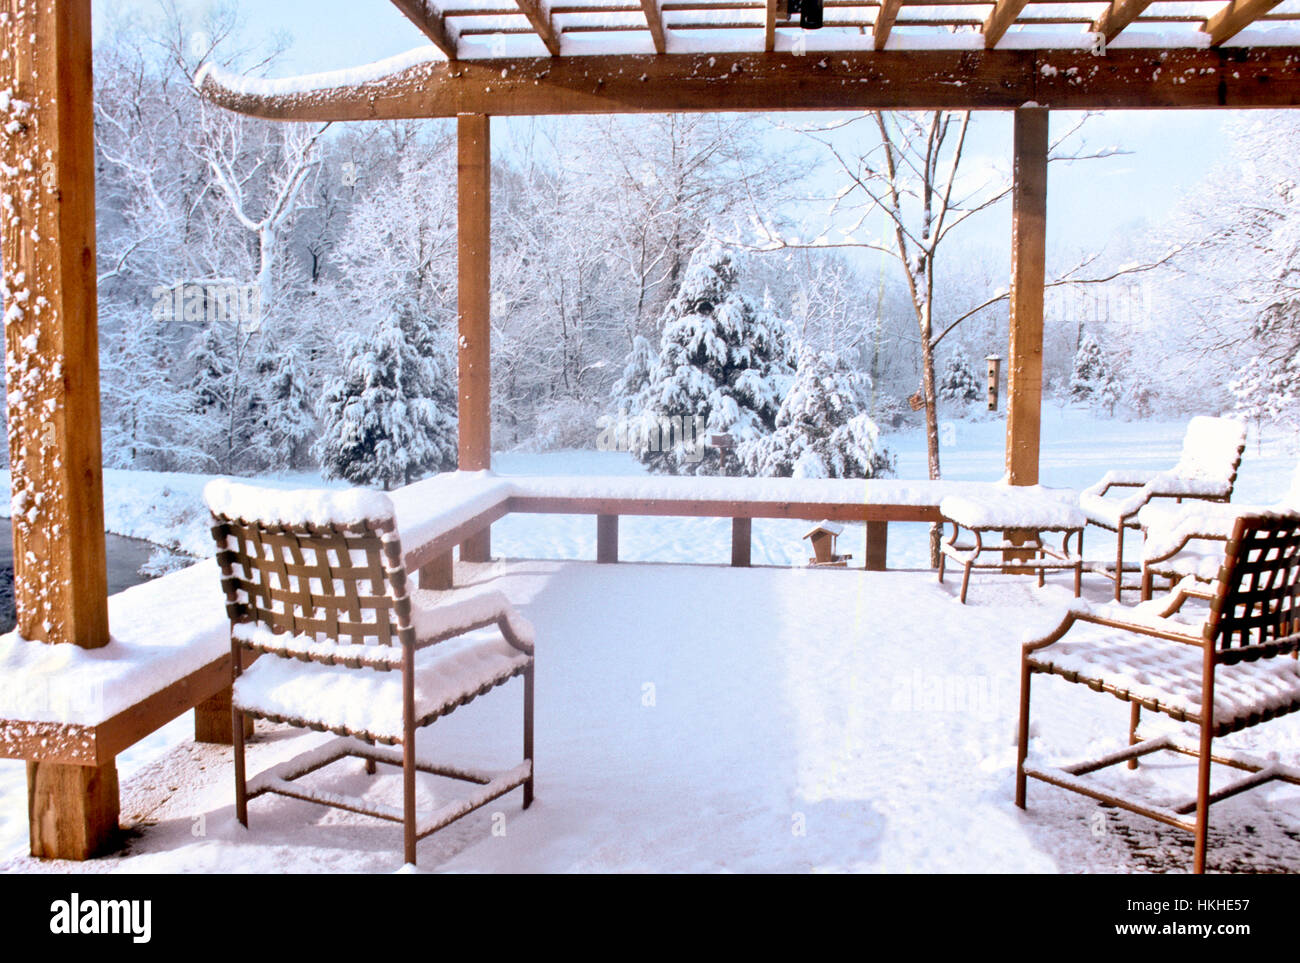 Friedliche verschneite Outdoor Deck mit Schnee auf den Möbeln, den Winter Hinterhof außerhalb Home, Missouri, USA Stockfoto